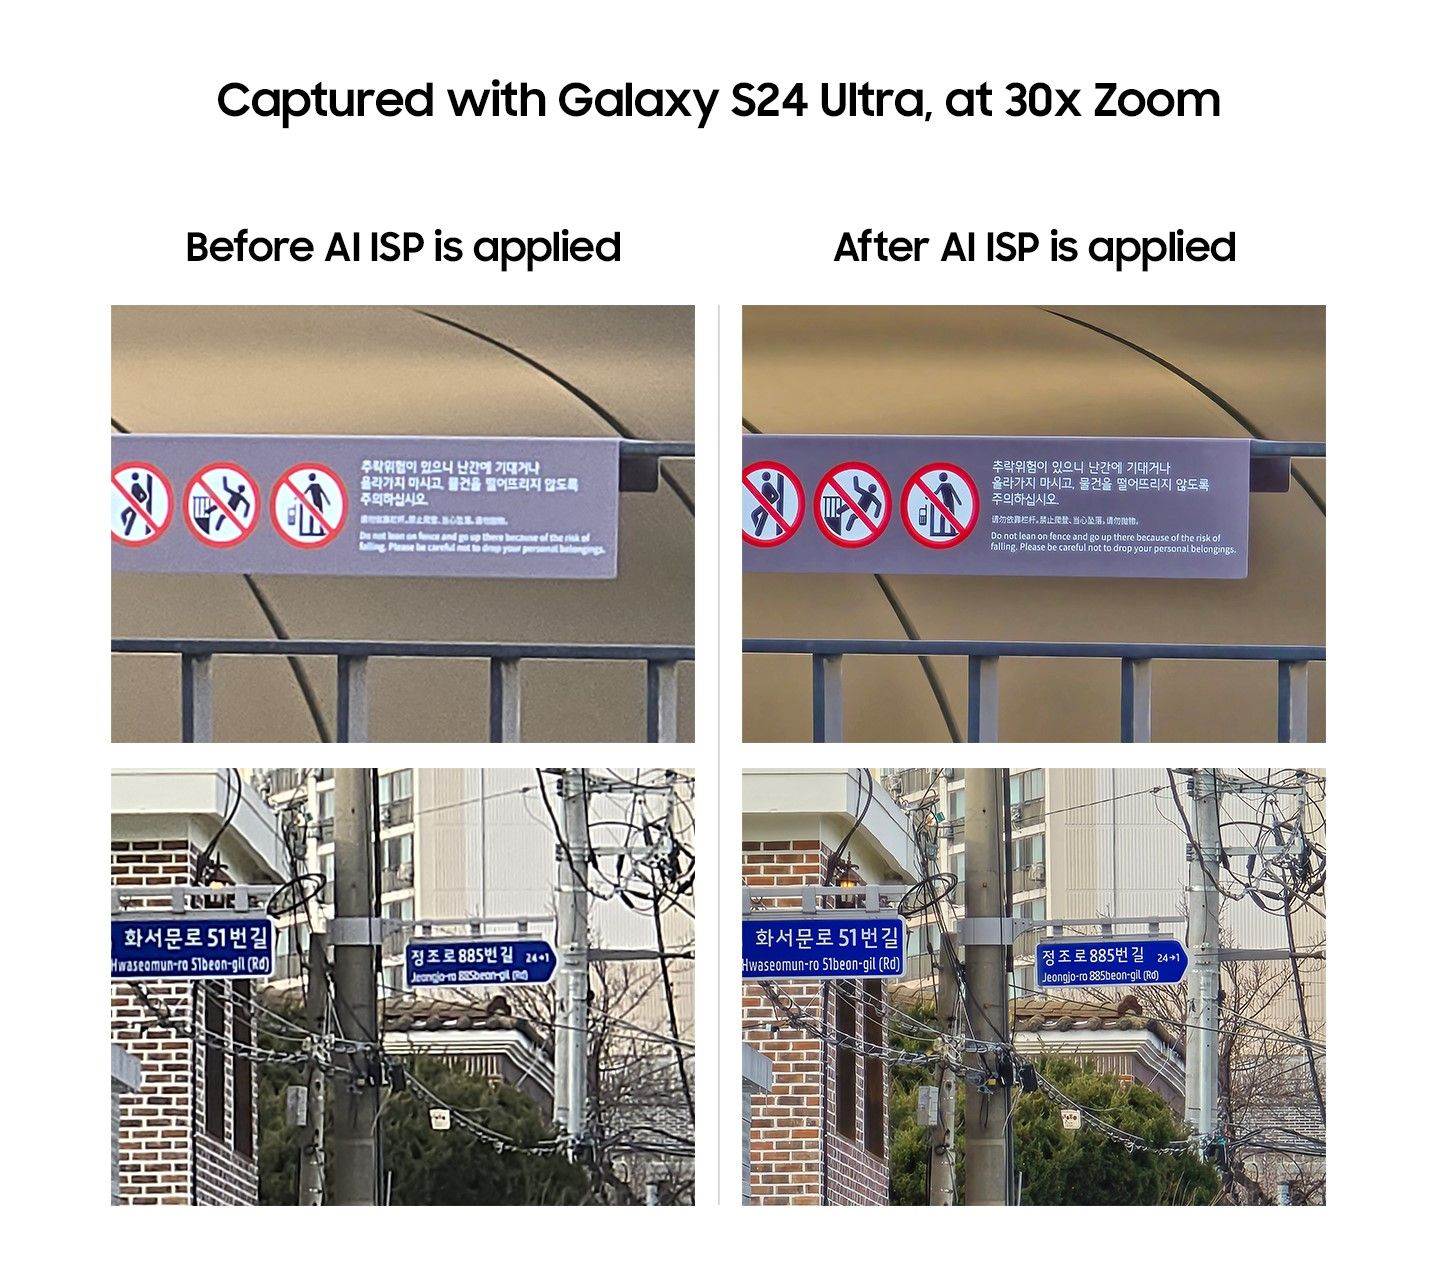  Samsung Galaxy S24 Ultra (2).jpg 